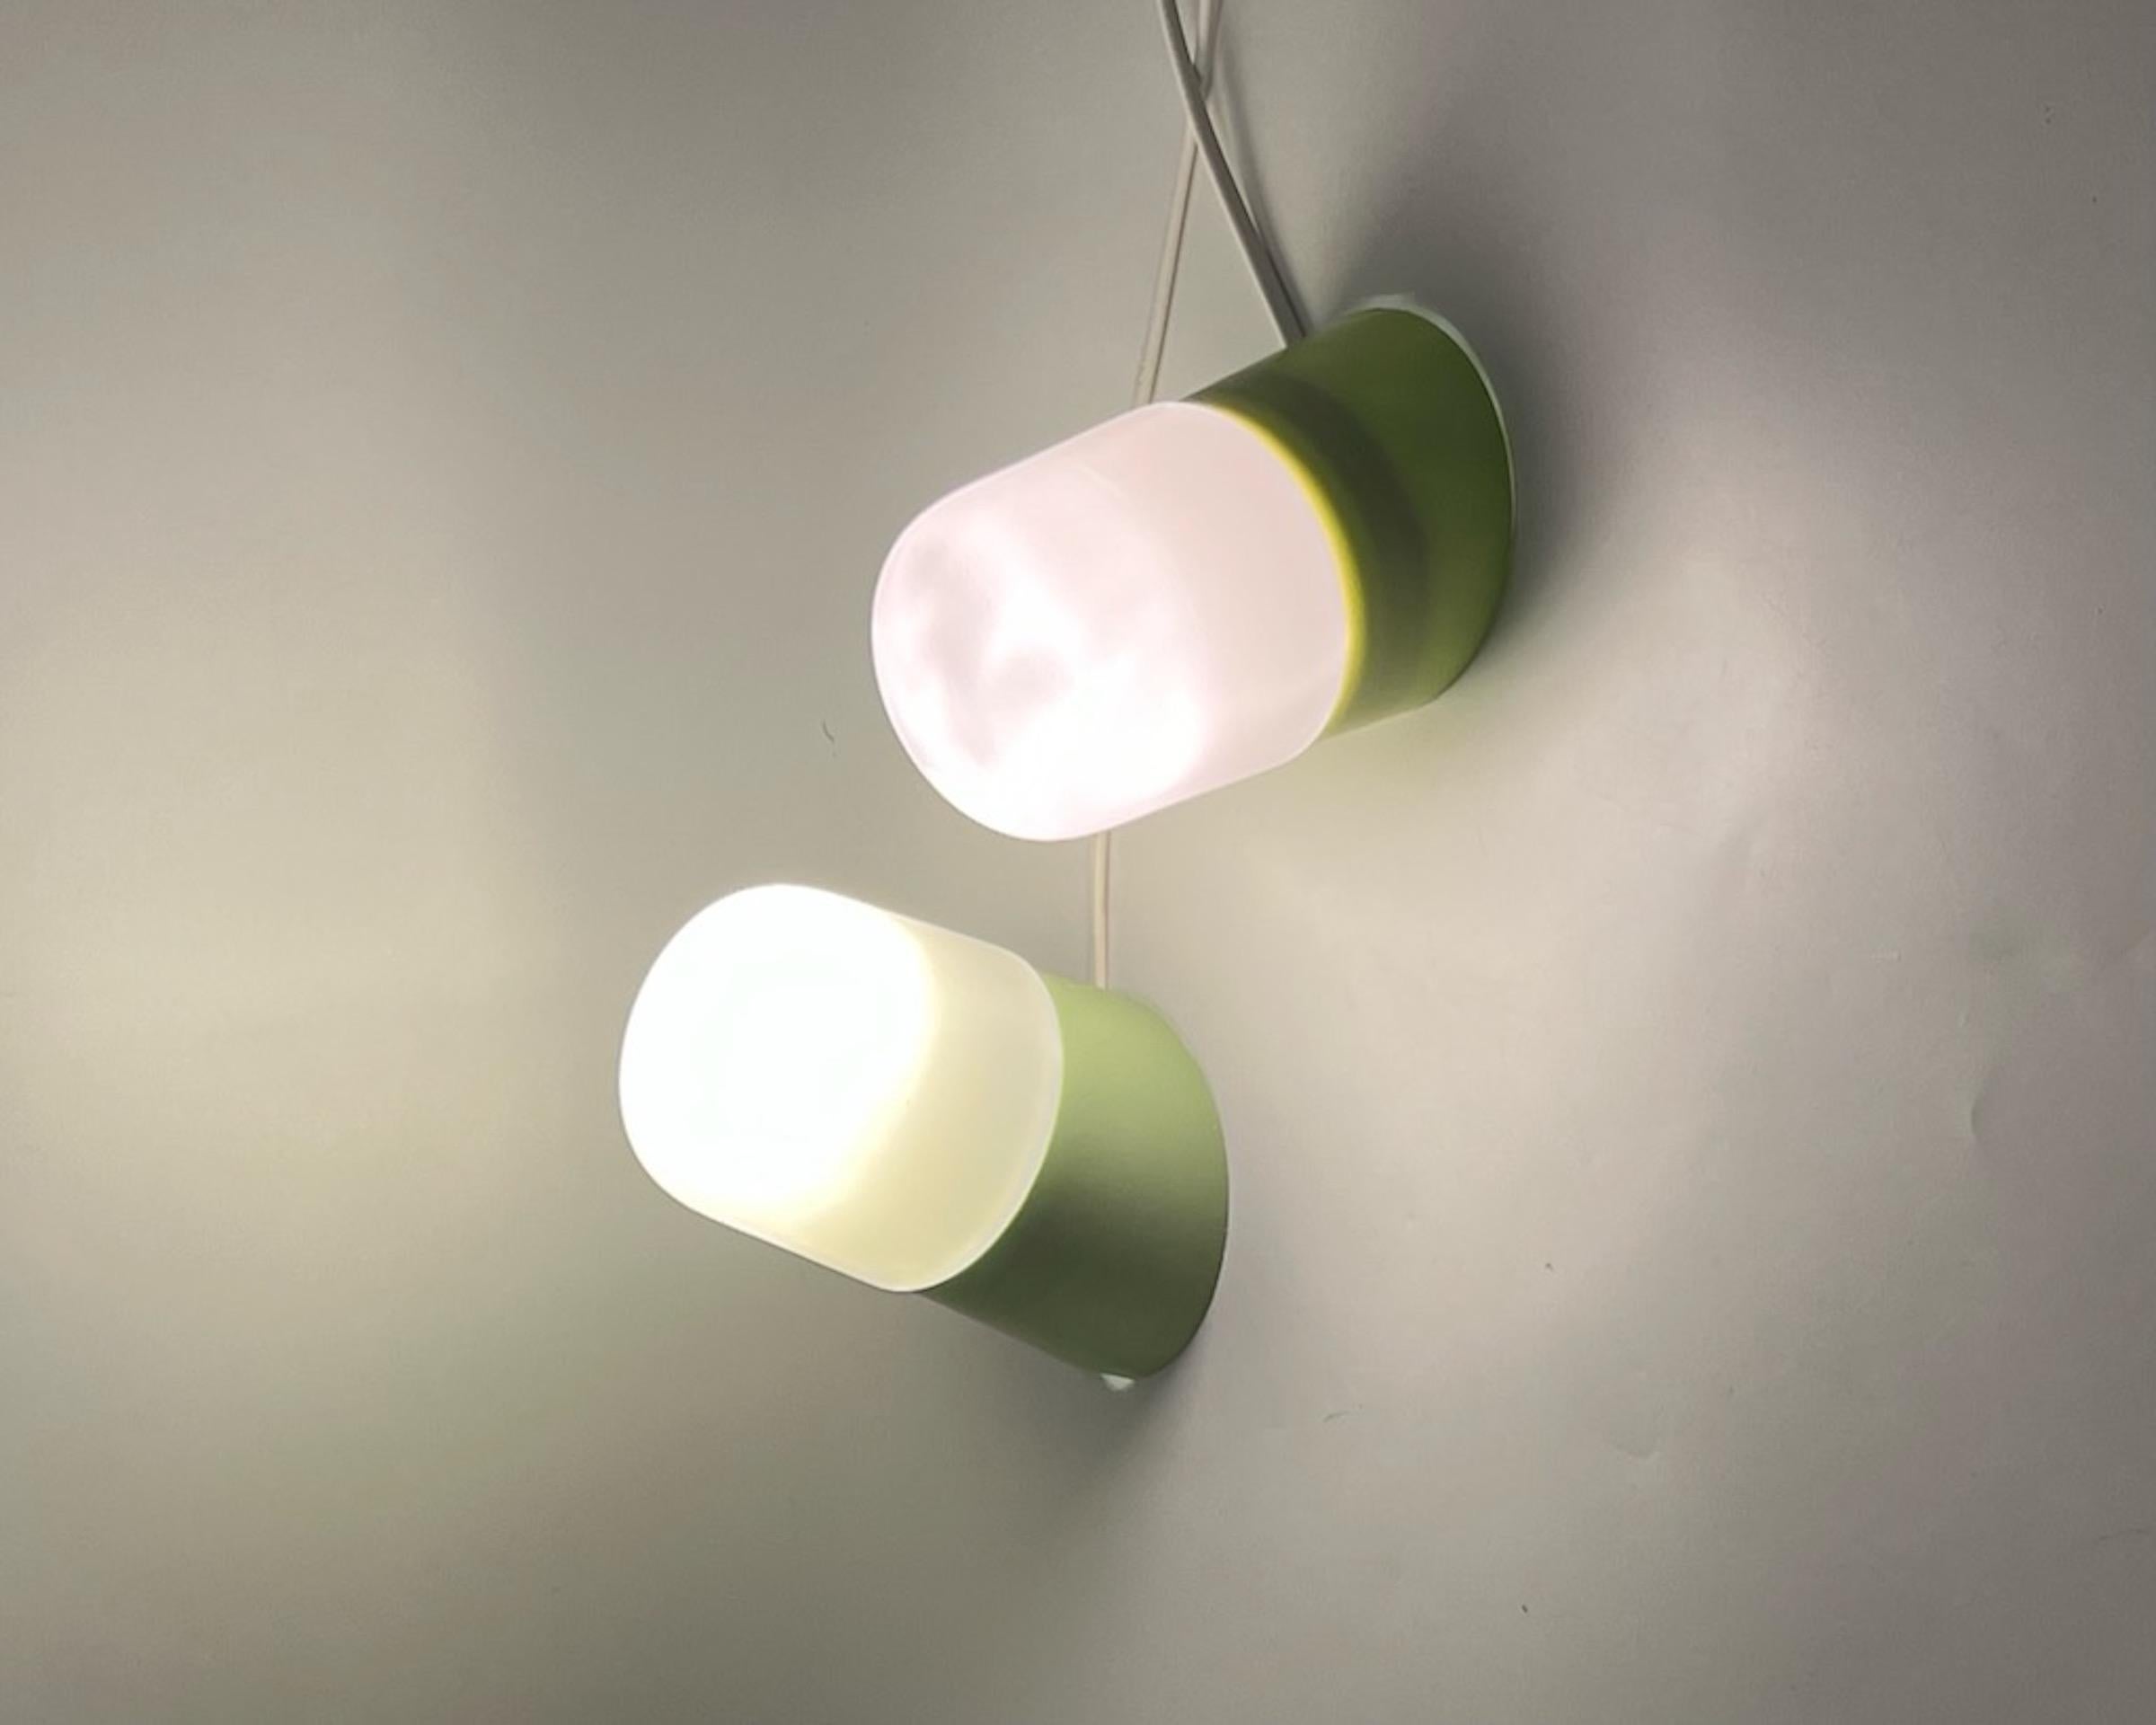 Jolie série d'appliques vertes en forme de pilule datant des années 60. Ces charmantes lampes au design industriel sont composées d'une base en bakélite. L'abat-jour est en verre opalin épais et la douille est en céramique authentique.

Cette lampe